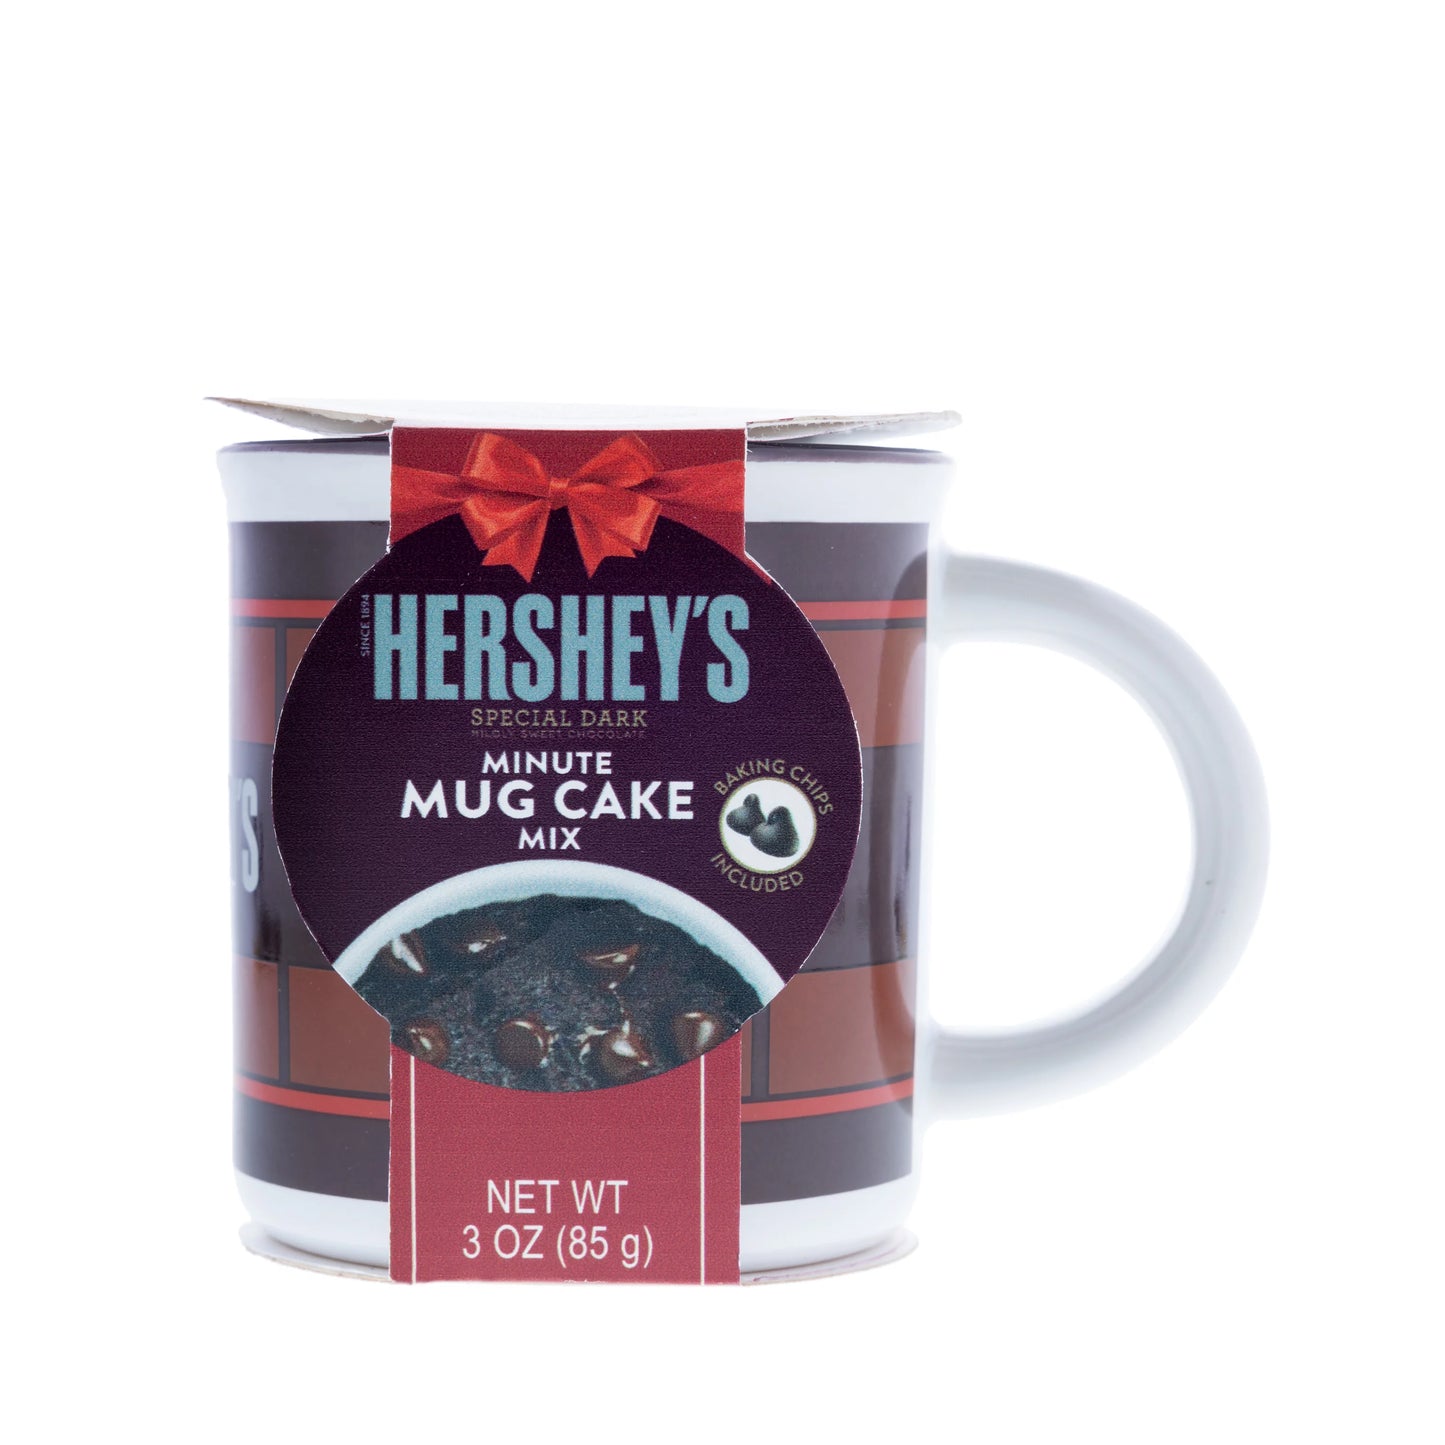 Hershey's Special Dark Mug Cake Mix, 3 oz, With 10 oz Ceramic Mug